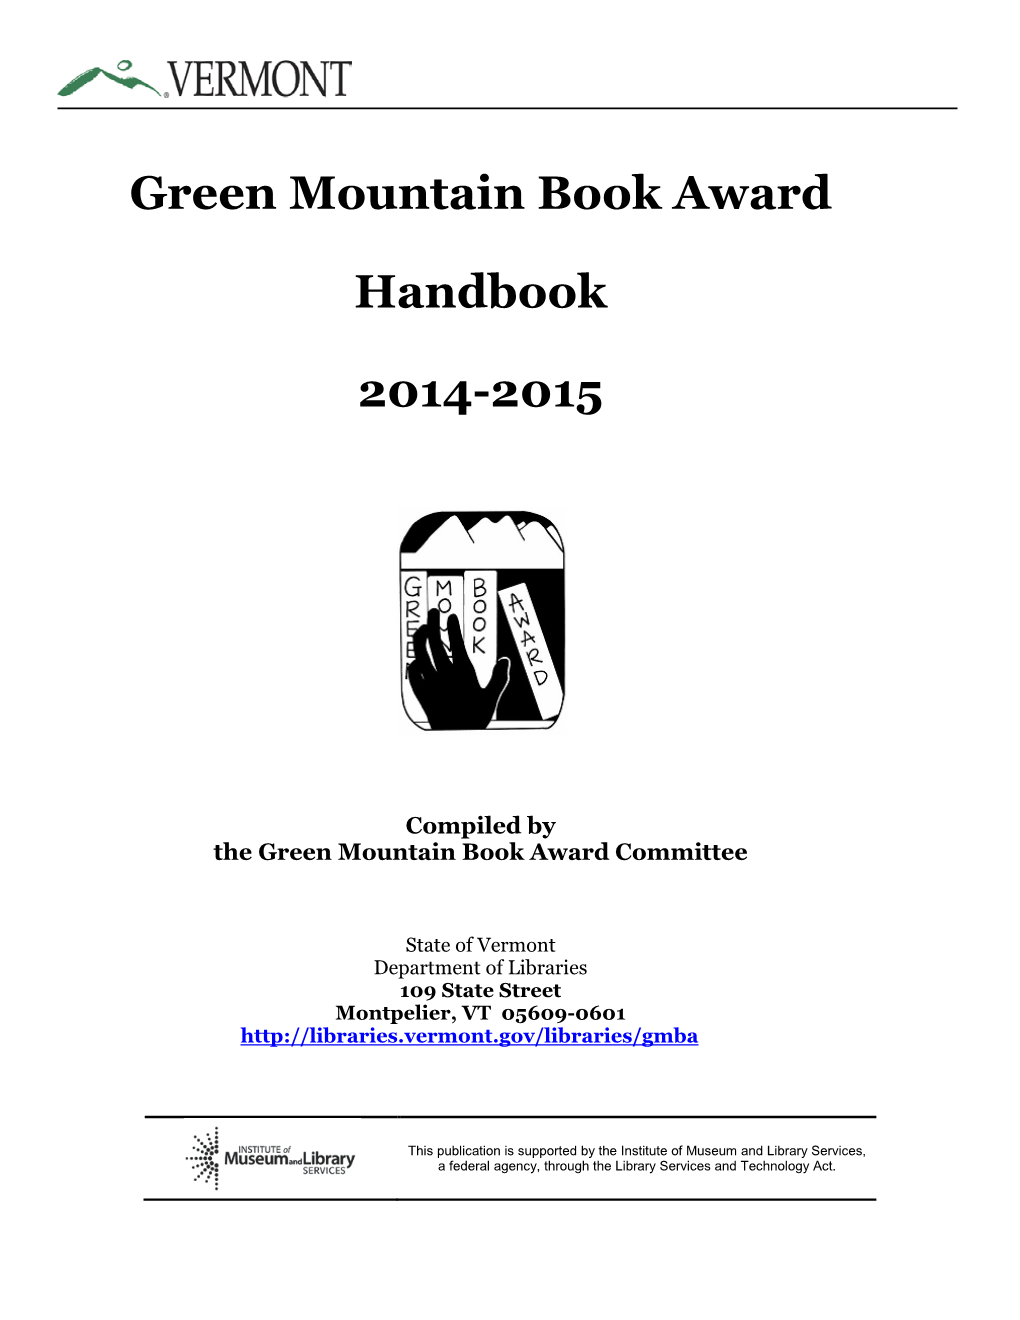 Green Mountain Book Award Handbook 2014-2015